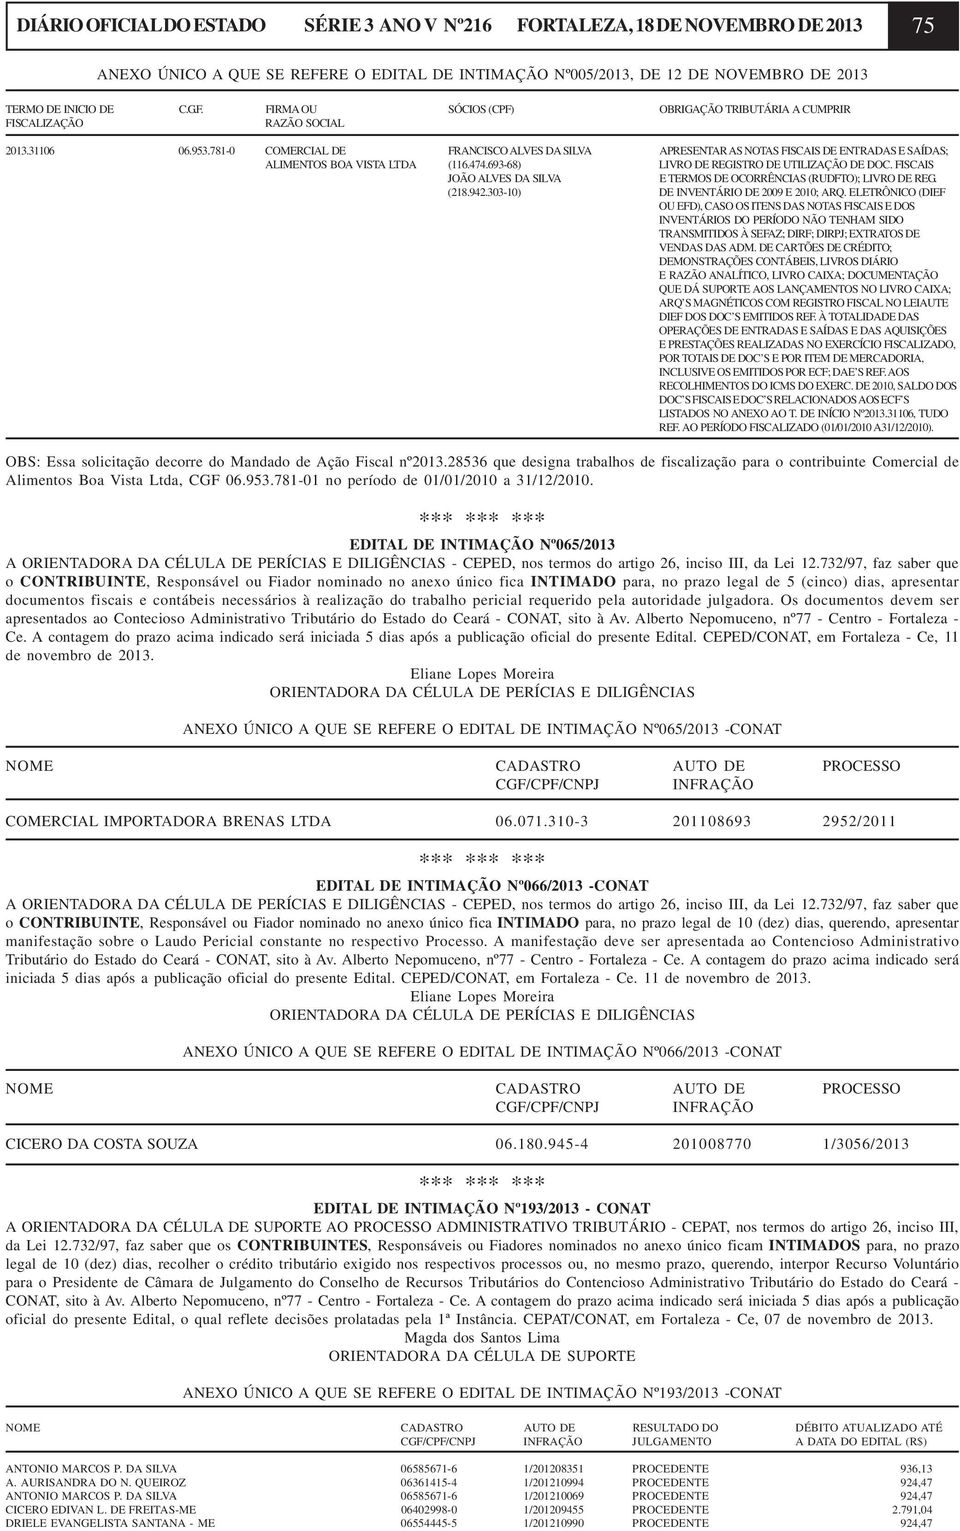 FISCAIS JOÃO ALVES DA SILVA E TERMOS DE OCORRÊNCIAS (RUDFTO); LIVRO DE REG. (218.942.303-10) DE INVENTÁRIO DE 2009 E 2010; ARQ.